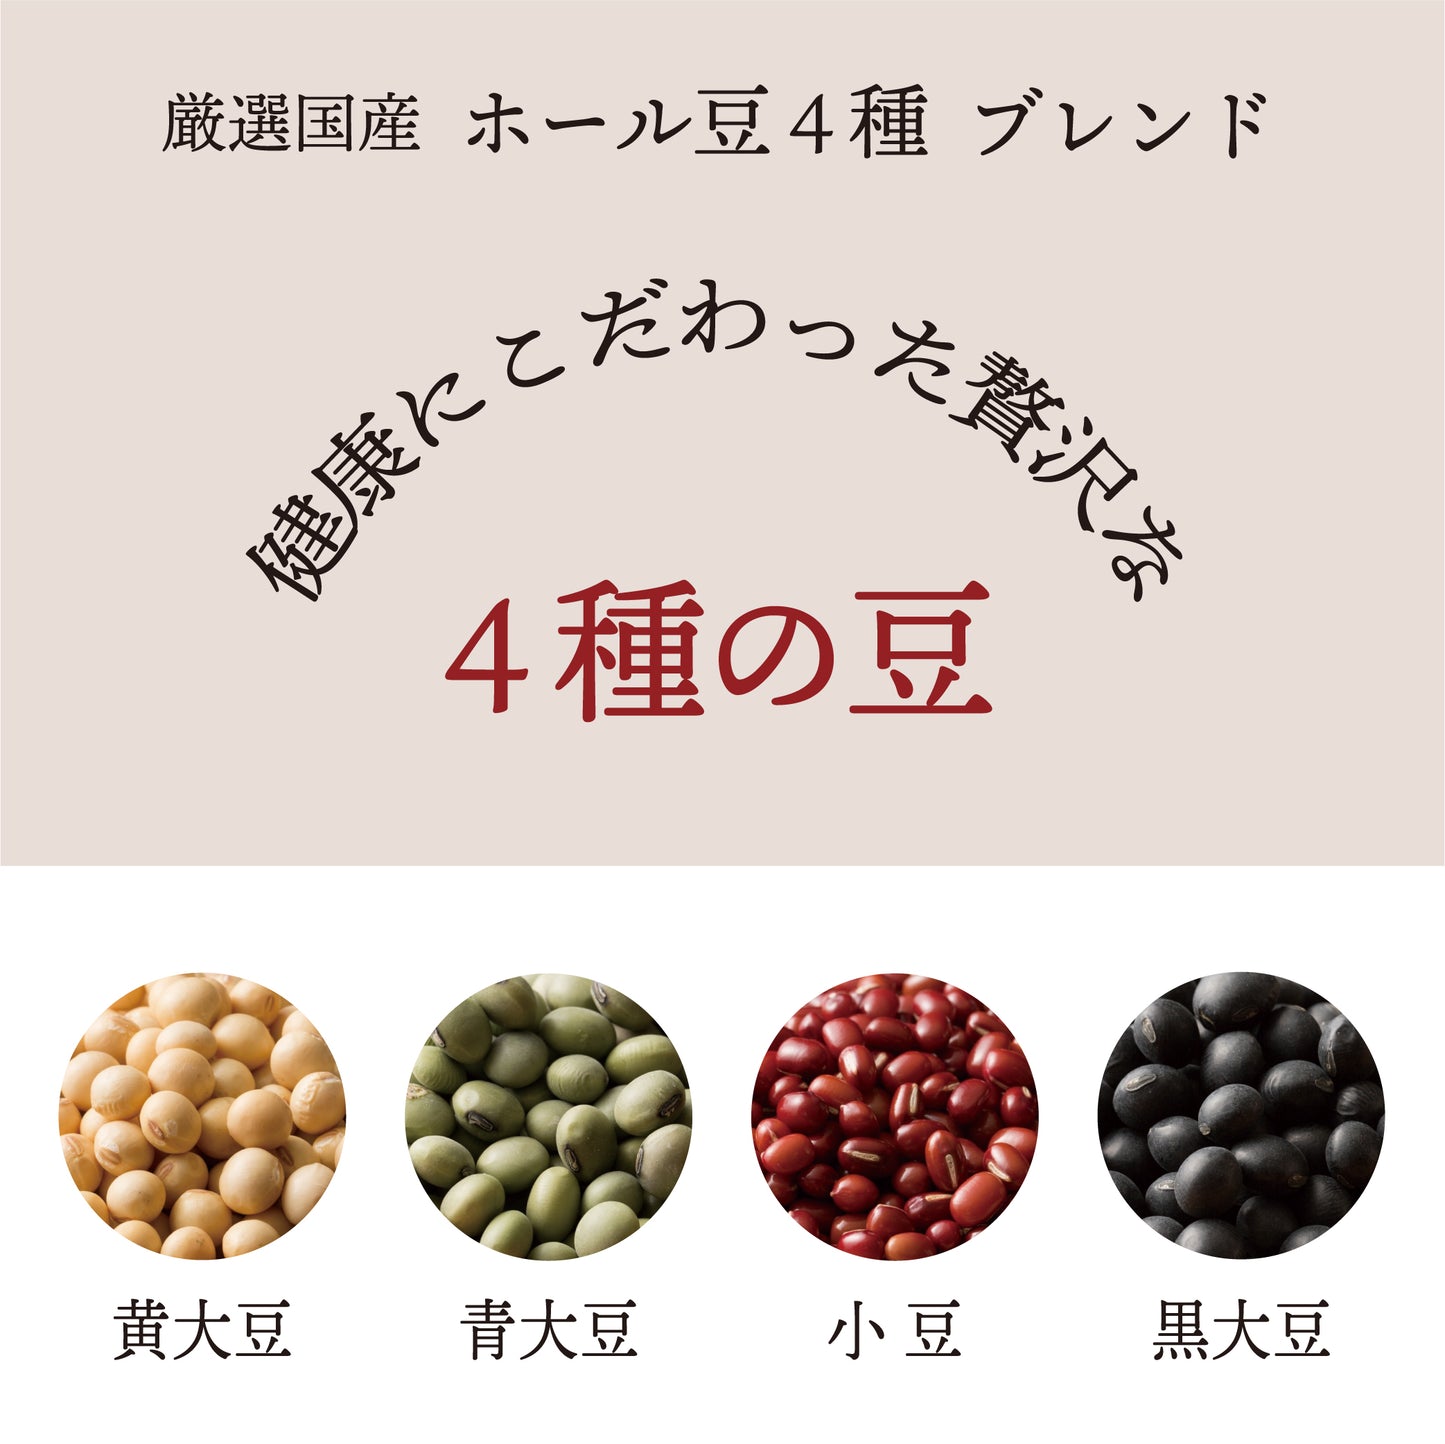 雑穀 雑穀米 国産 ホール豆４種ブレンド (大豆/黒大豆/青大豆/小豆) 450g